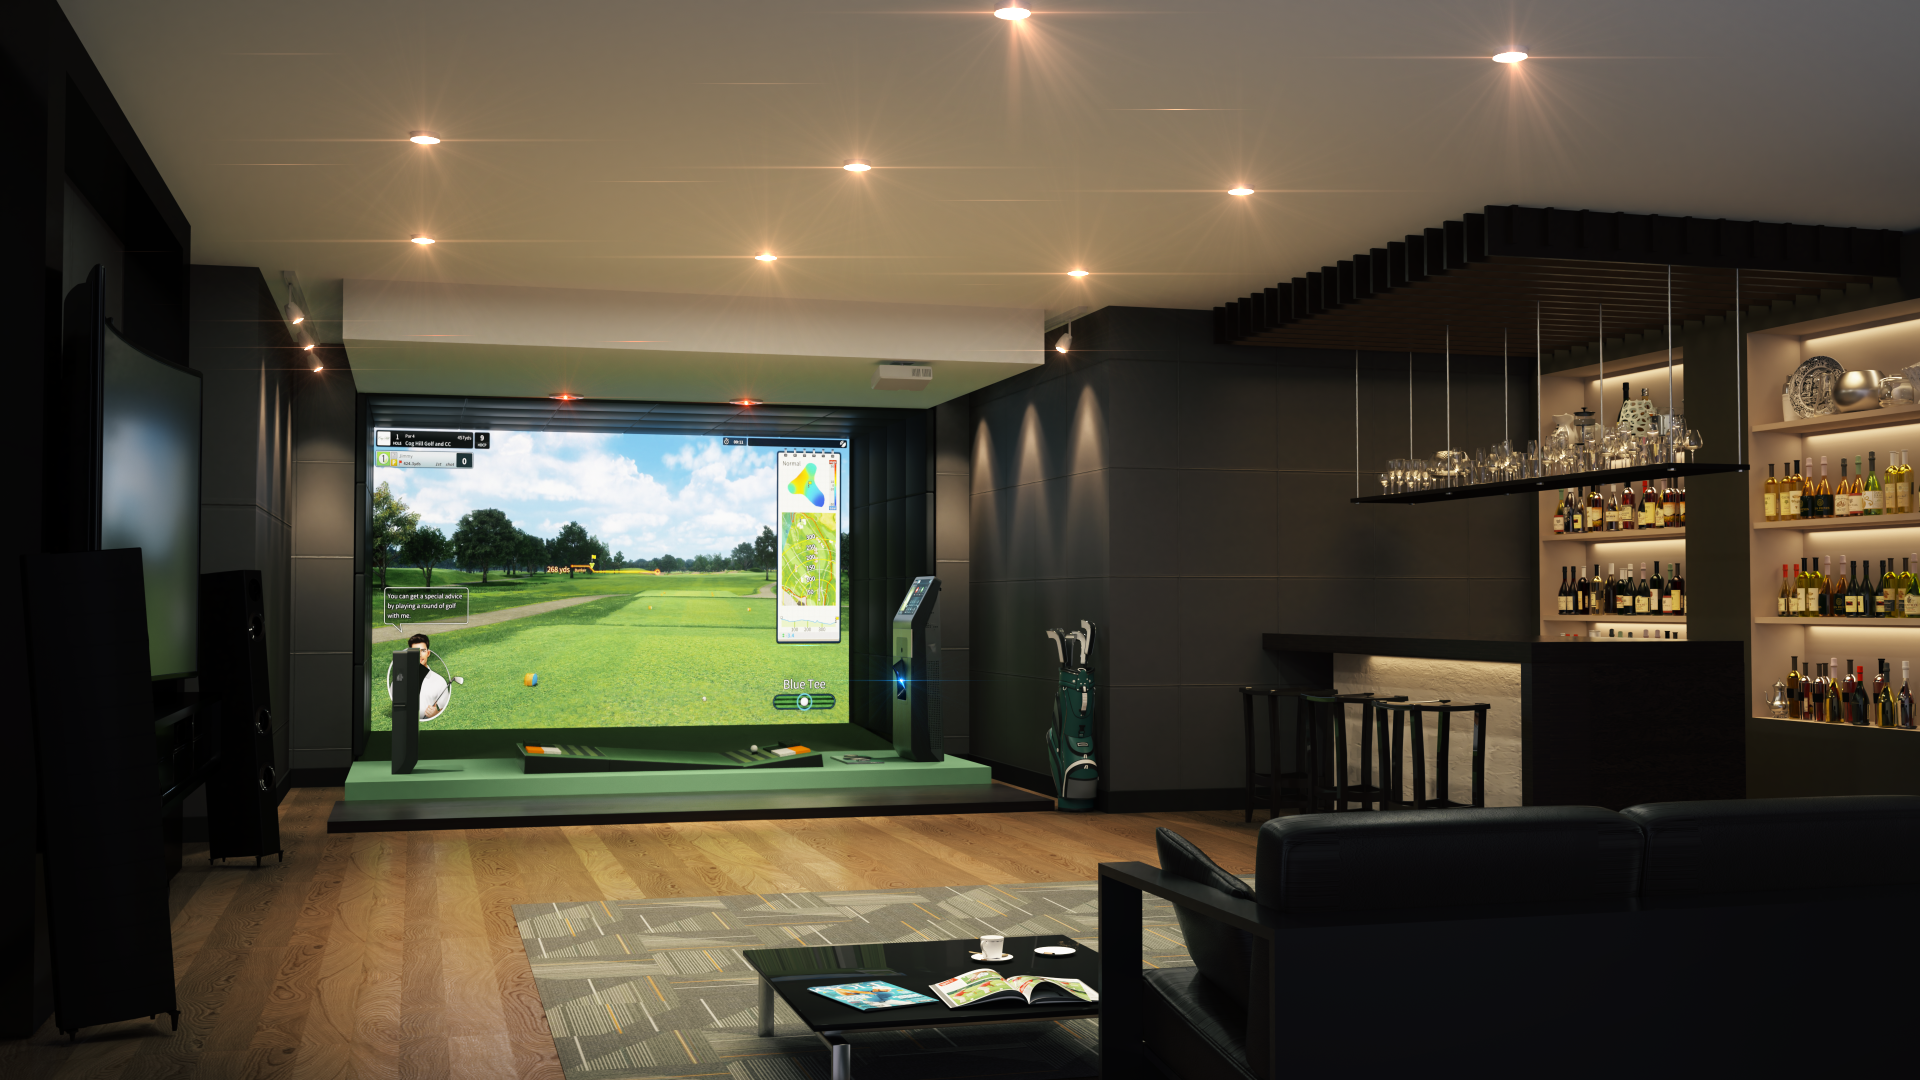 Golfzon simulator setup inside a home for design ideas